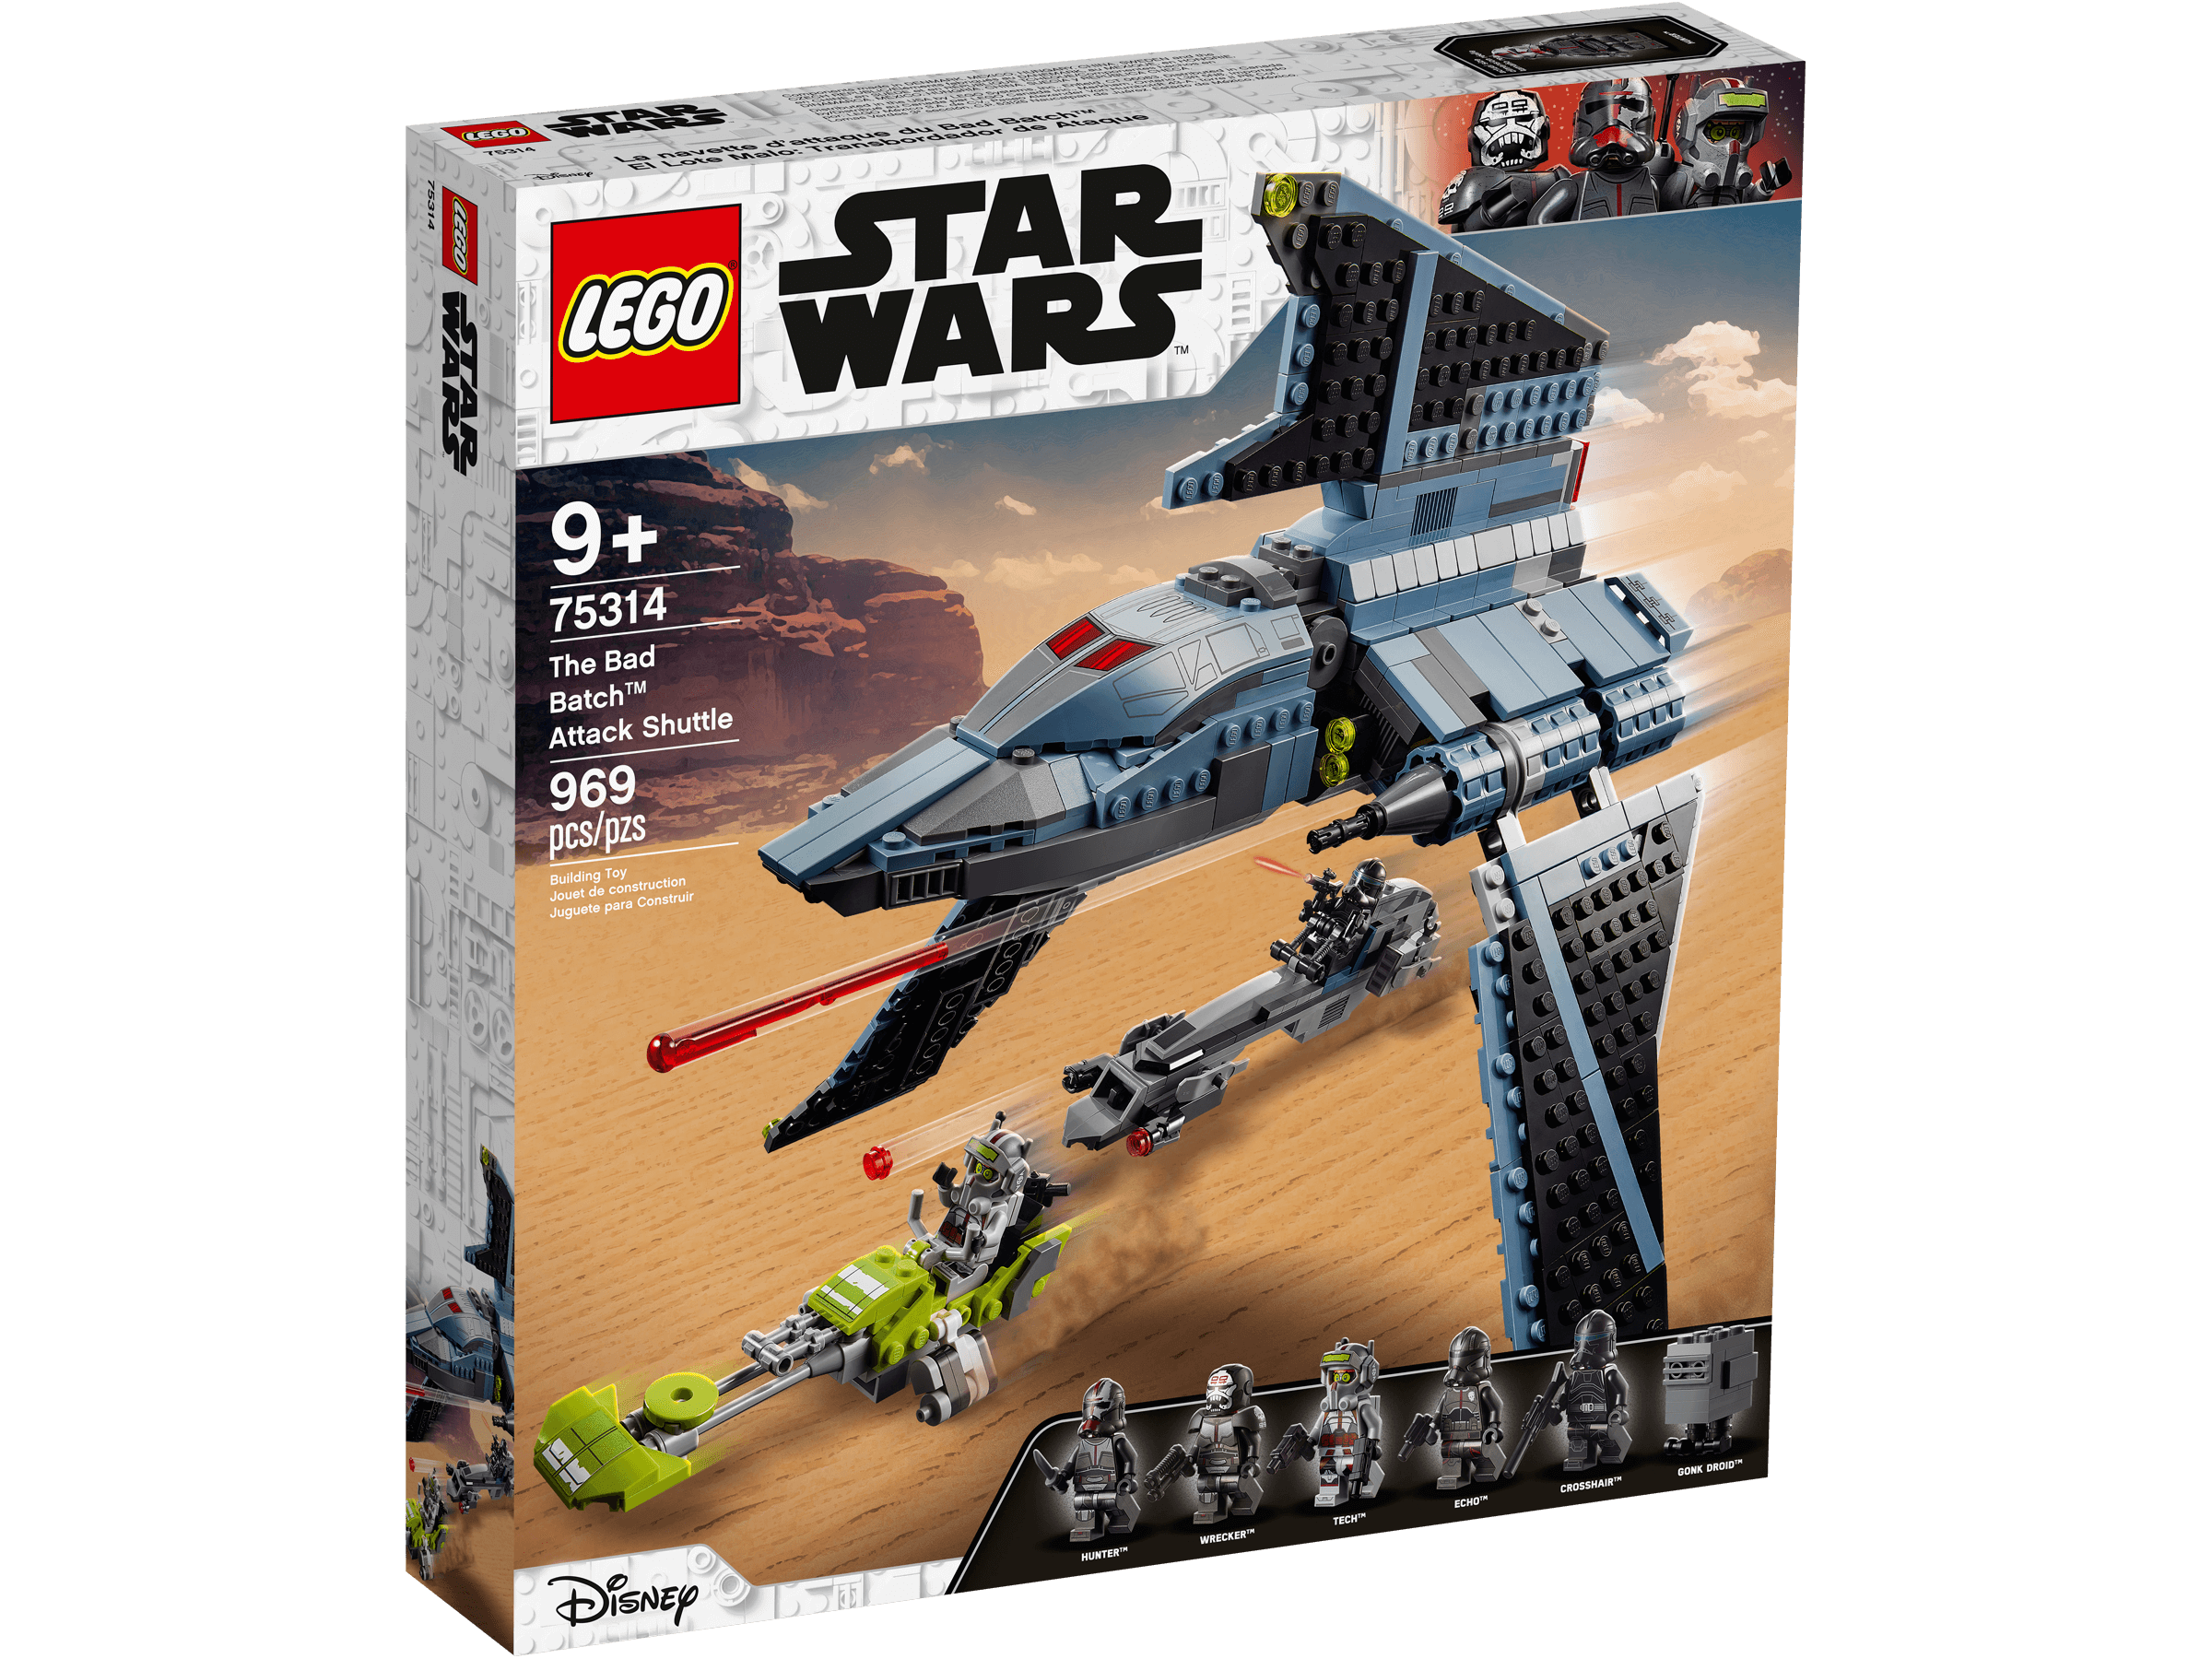 LEGO Star Wars Angriffsshuttle aus The Bad Batch (75314) - im GOLDSTIEN.SHOP verfügbar mit Gratisversand ab Schweizer Lager! (5702016914436)